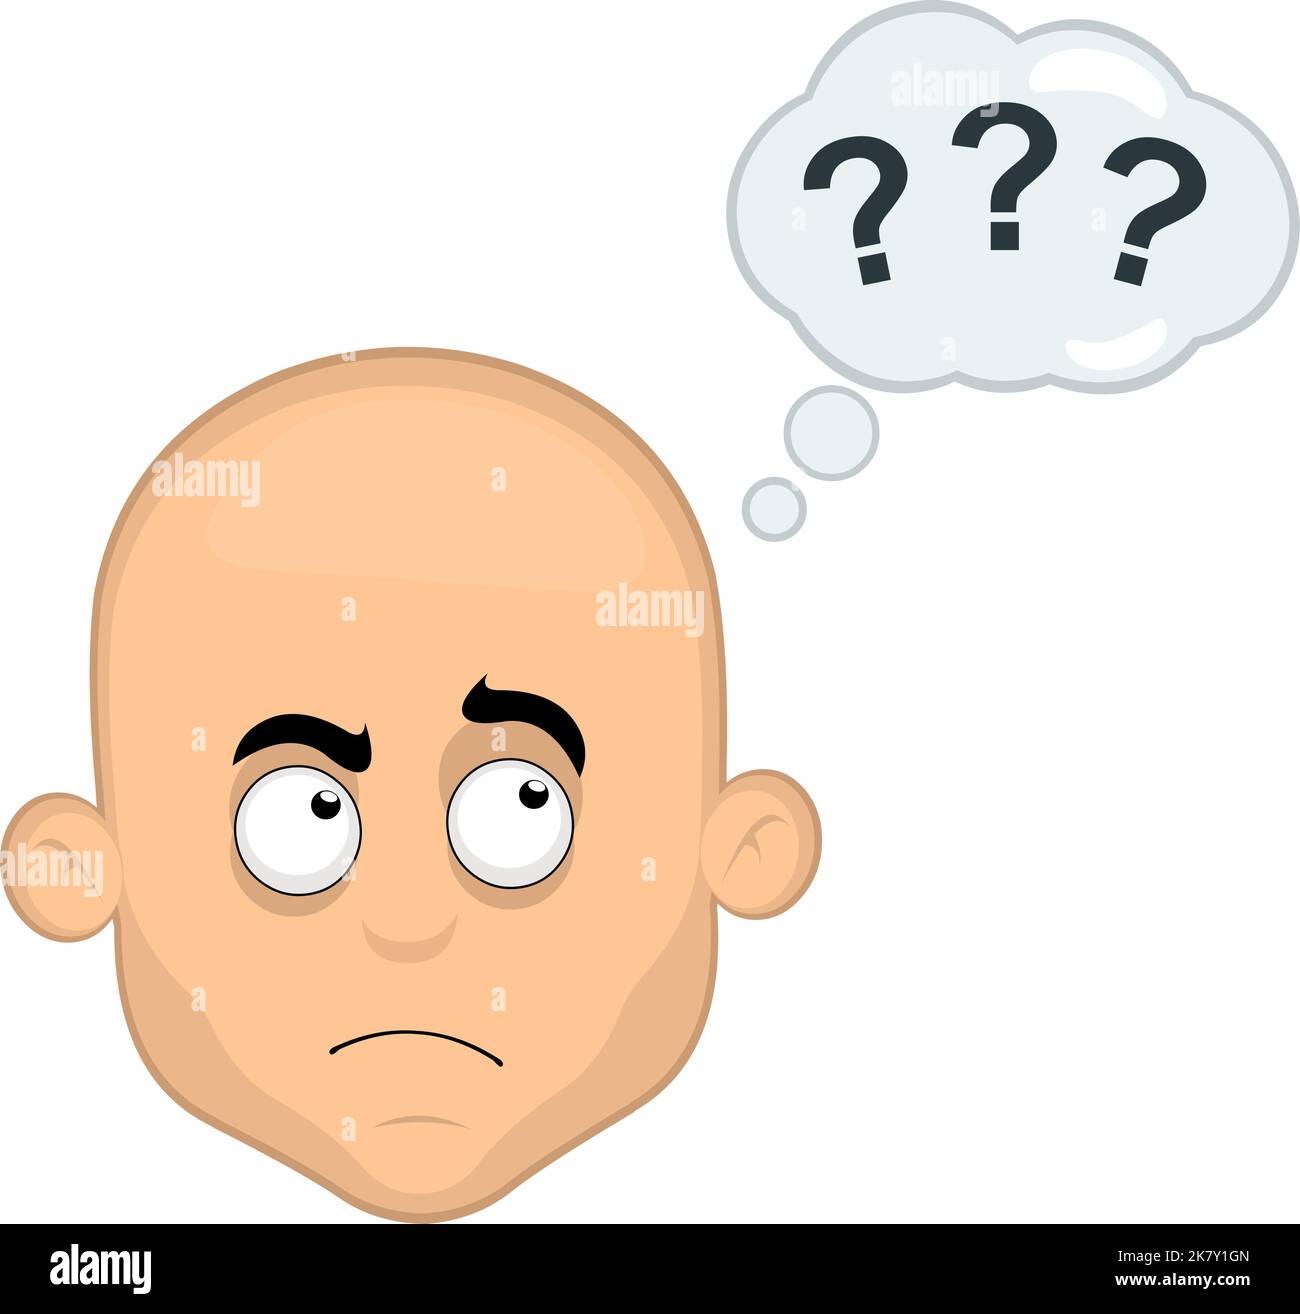 Ilustración vectorial de la cabeza de un hombre calvo de dibujos animados, con una expresión de pensamiento o duda y una nube de pensamiento con signos de interrogación Ilustración del Vector